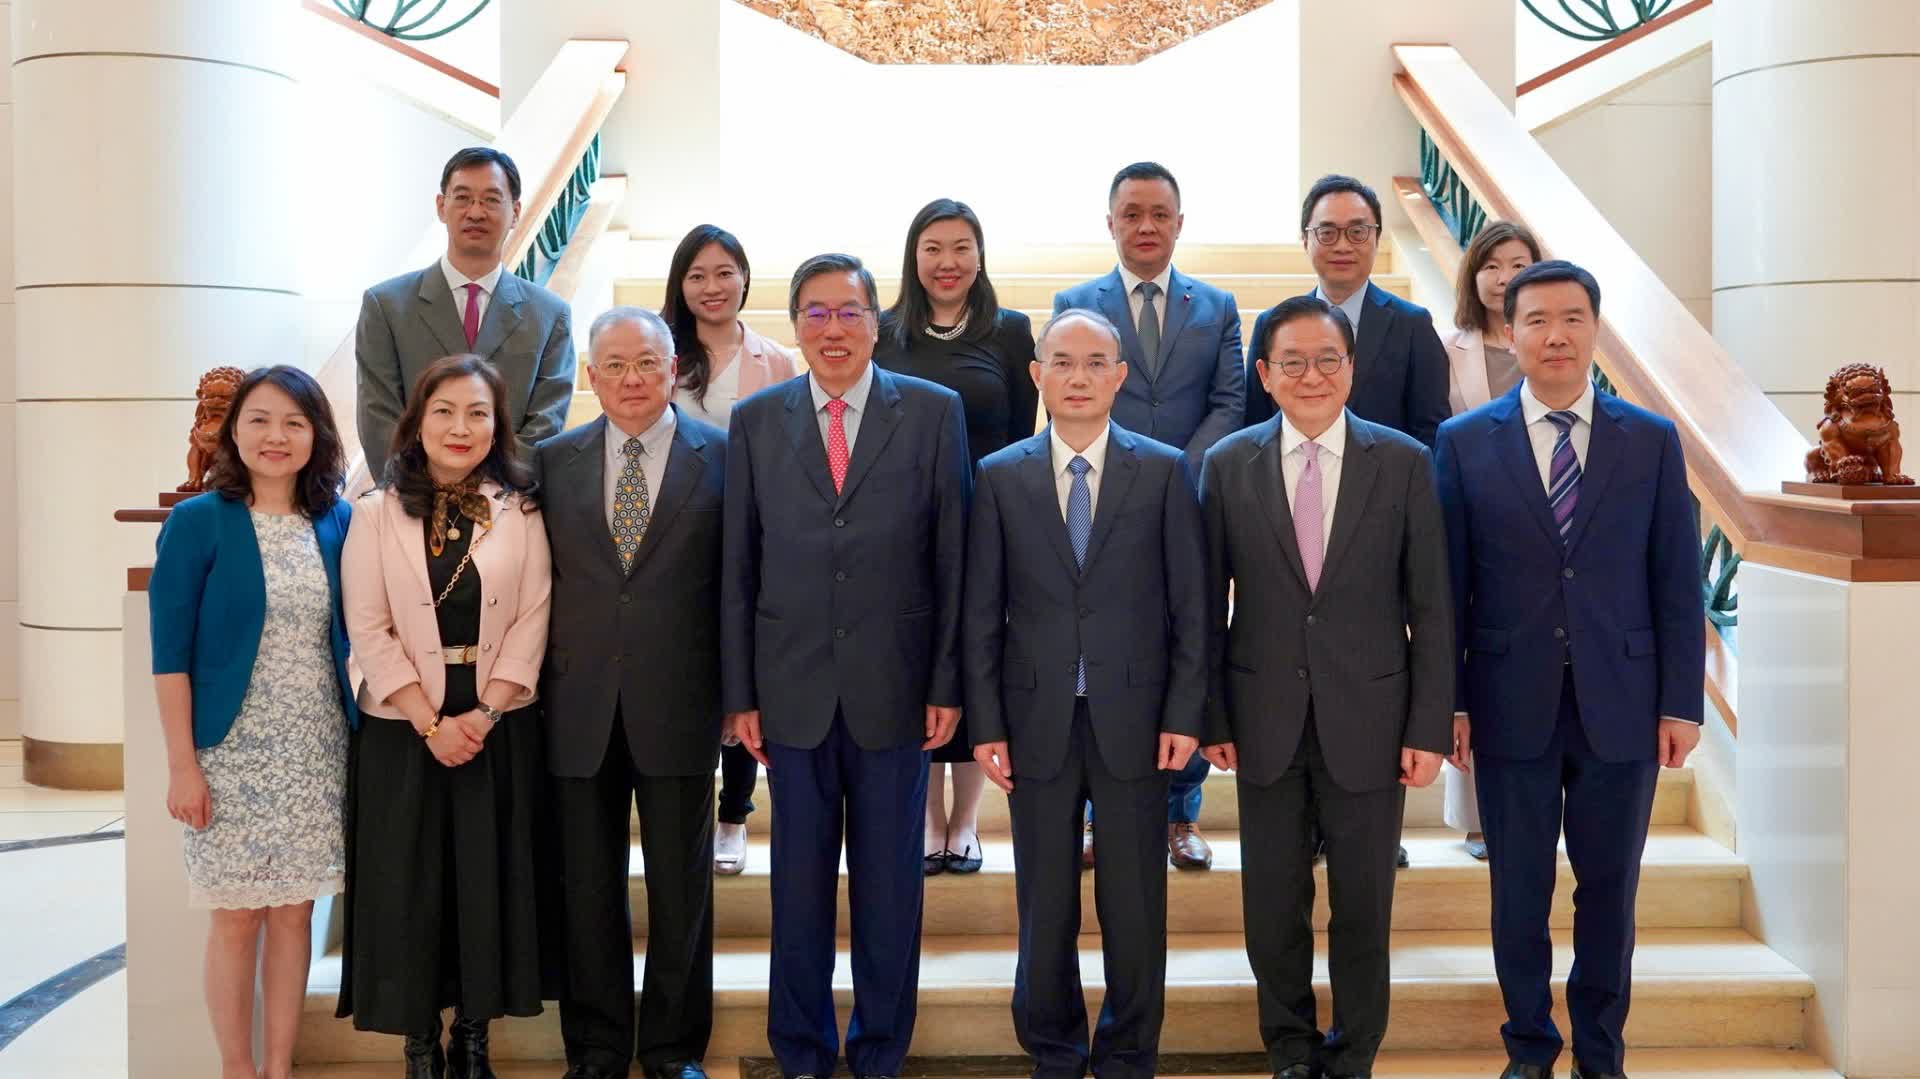 立法會考察團訪問新加坡國會　梁君彥倡兩地攜手共創新機遇